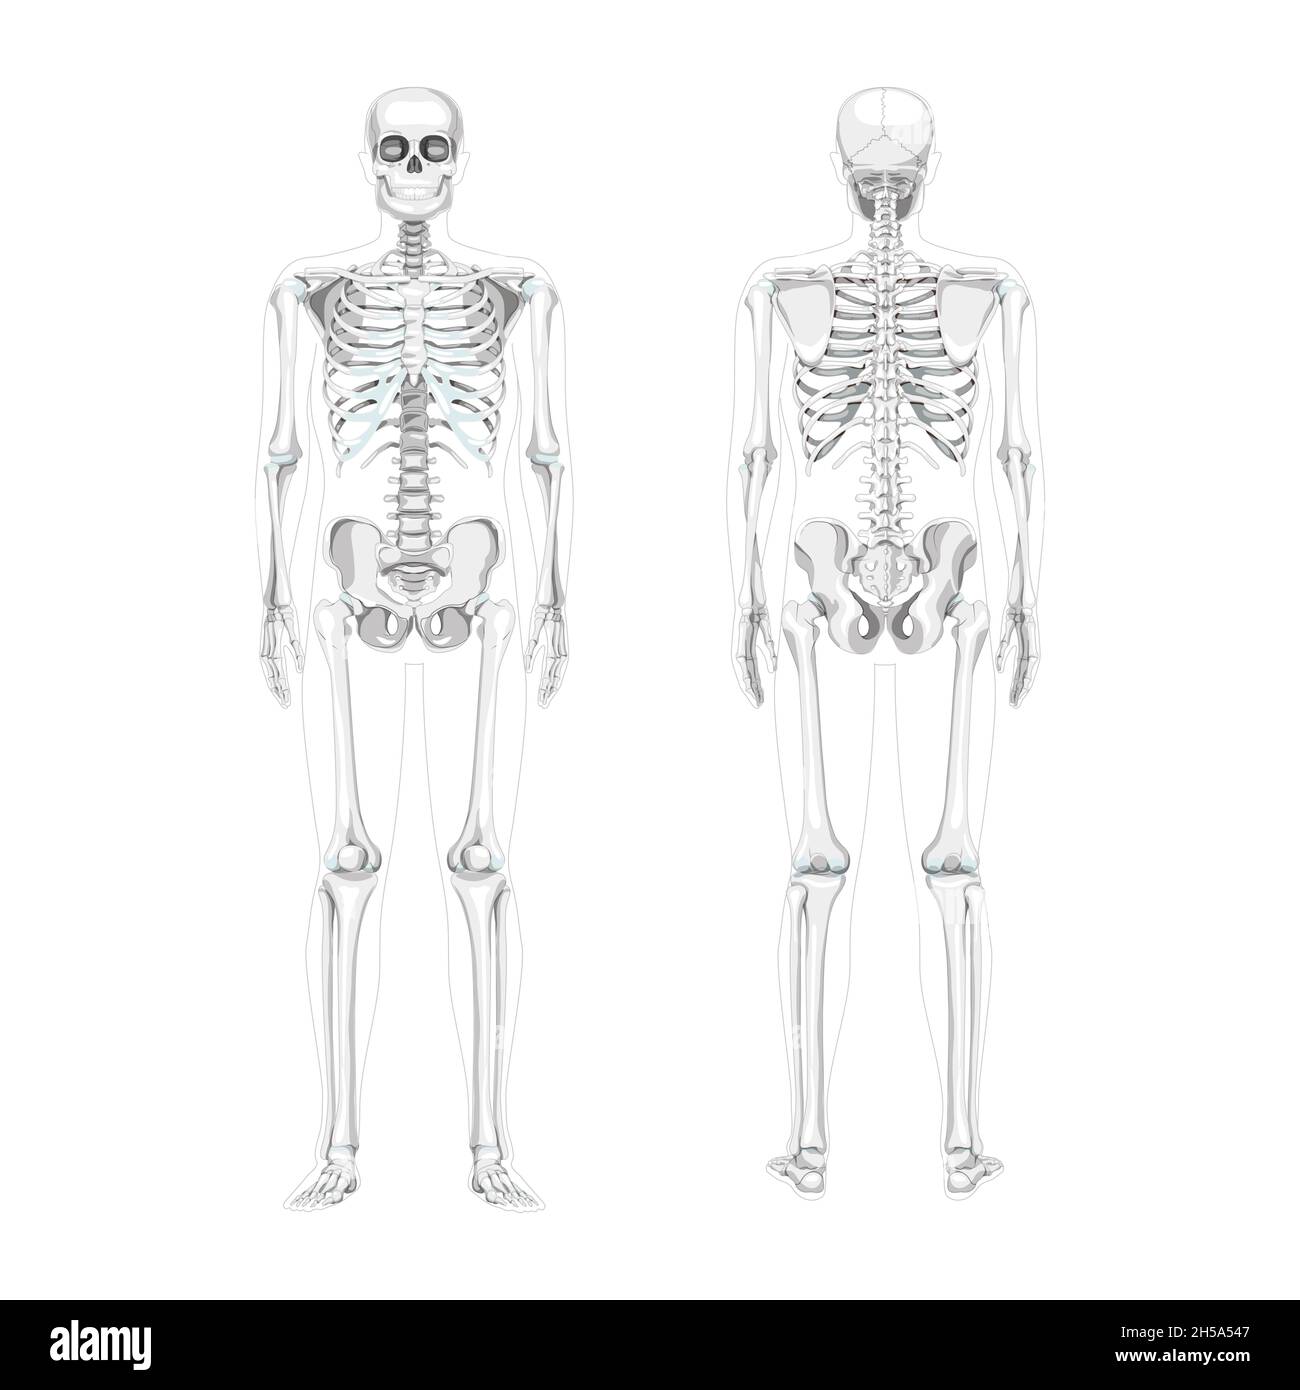 posterior vs anterior